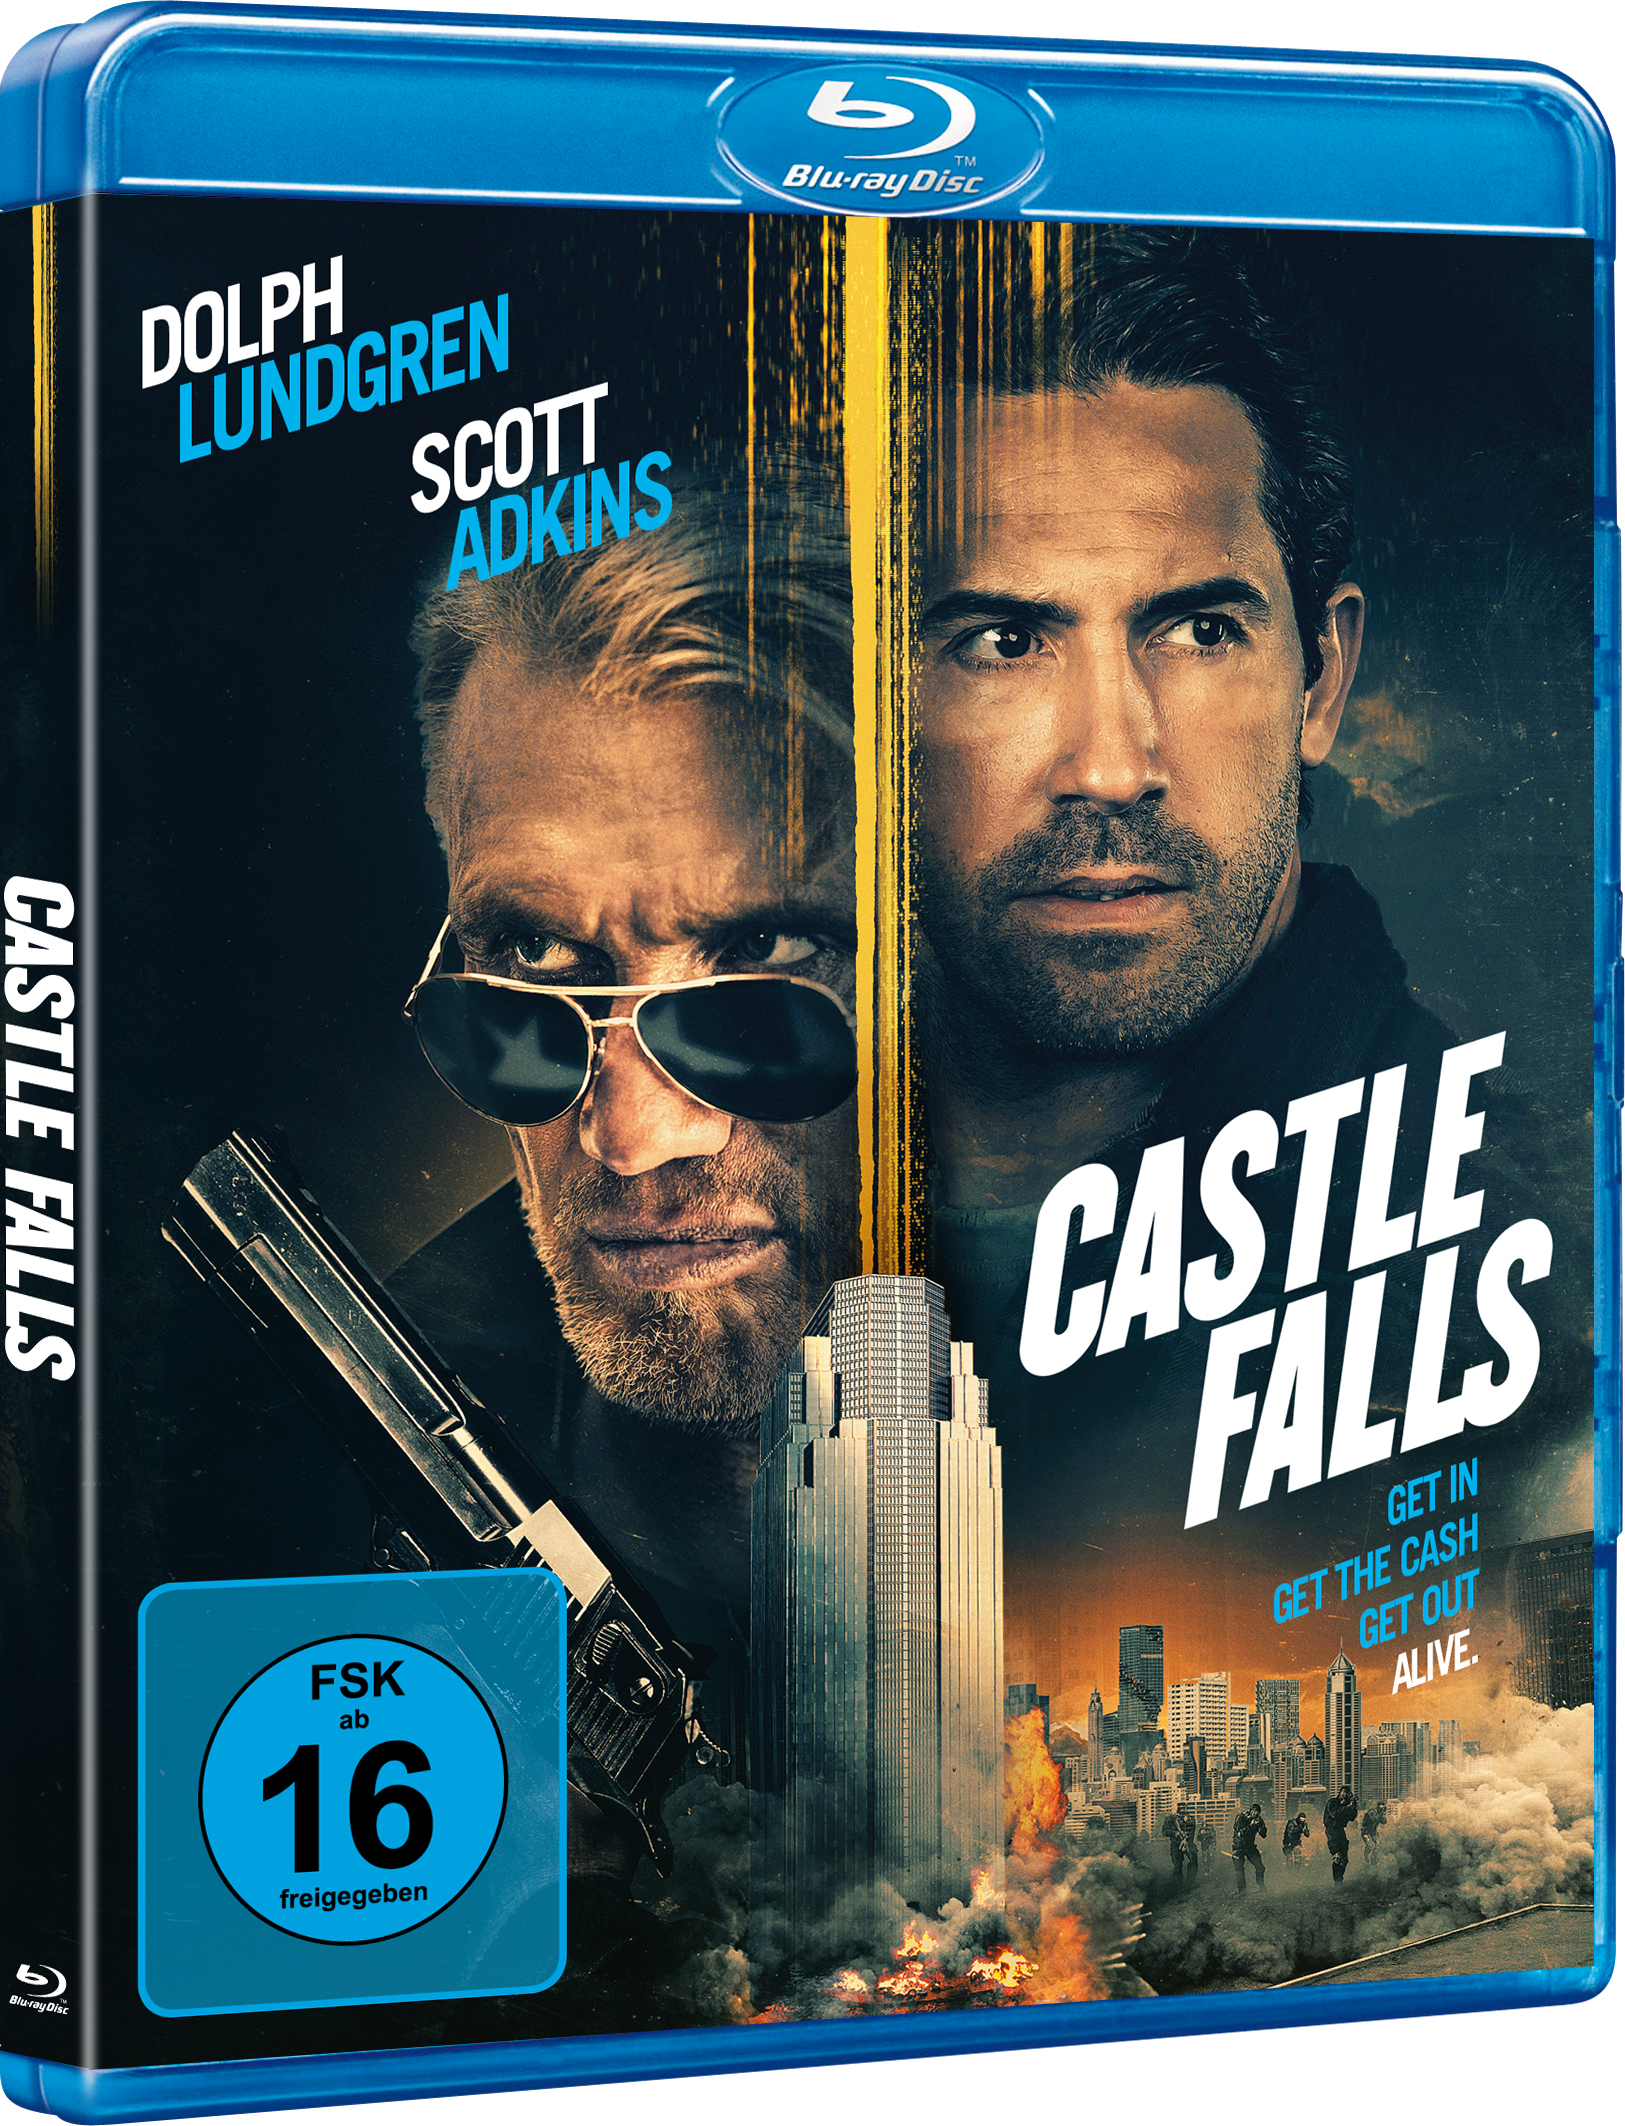 Trailer zu Castle Falls bringt Dolph Lundgren und Scott Adkins zusammen